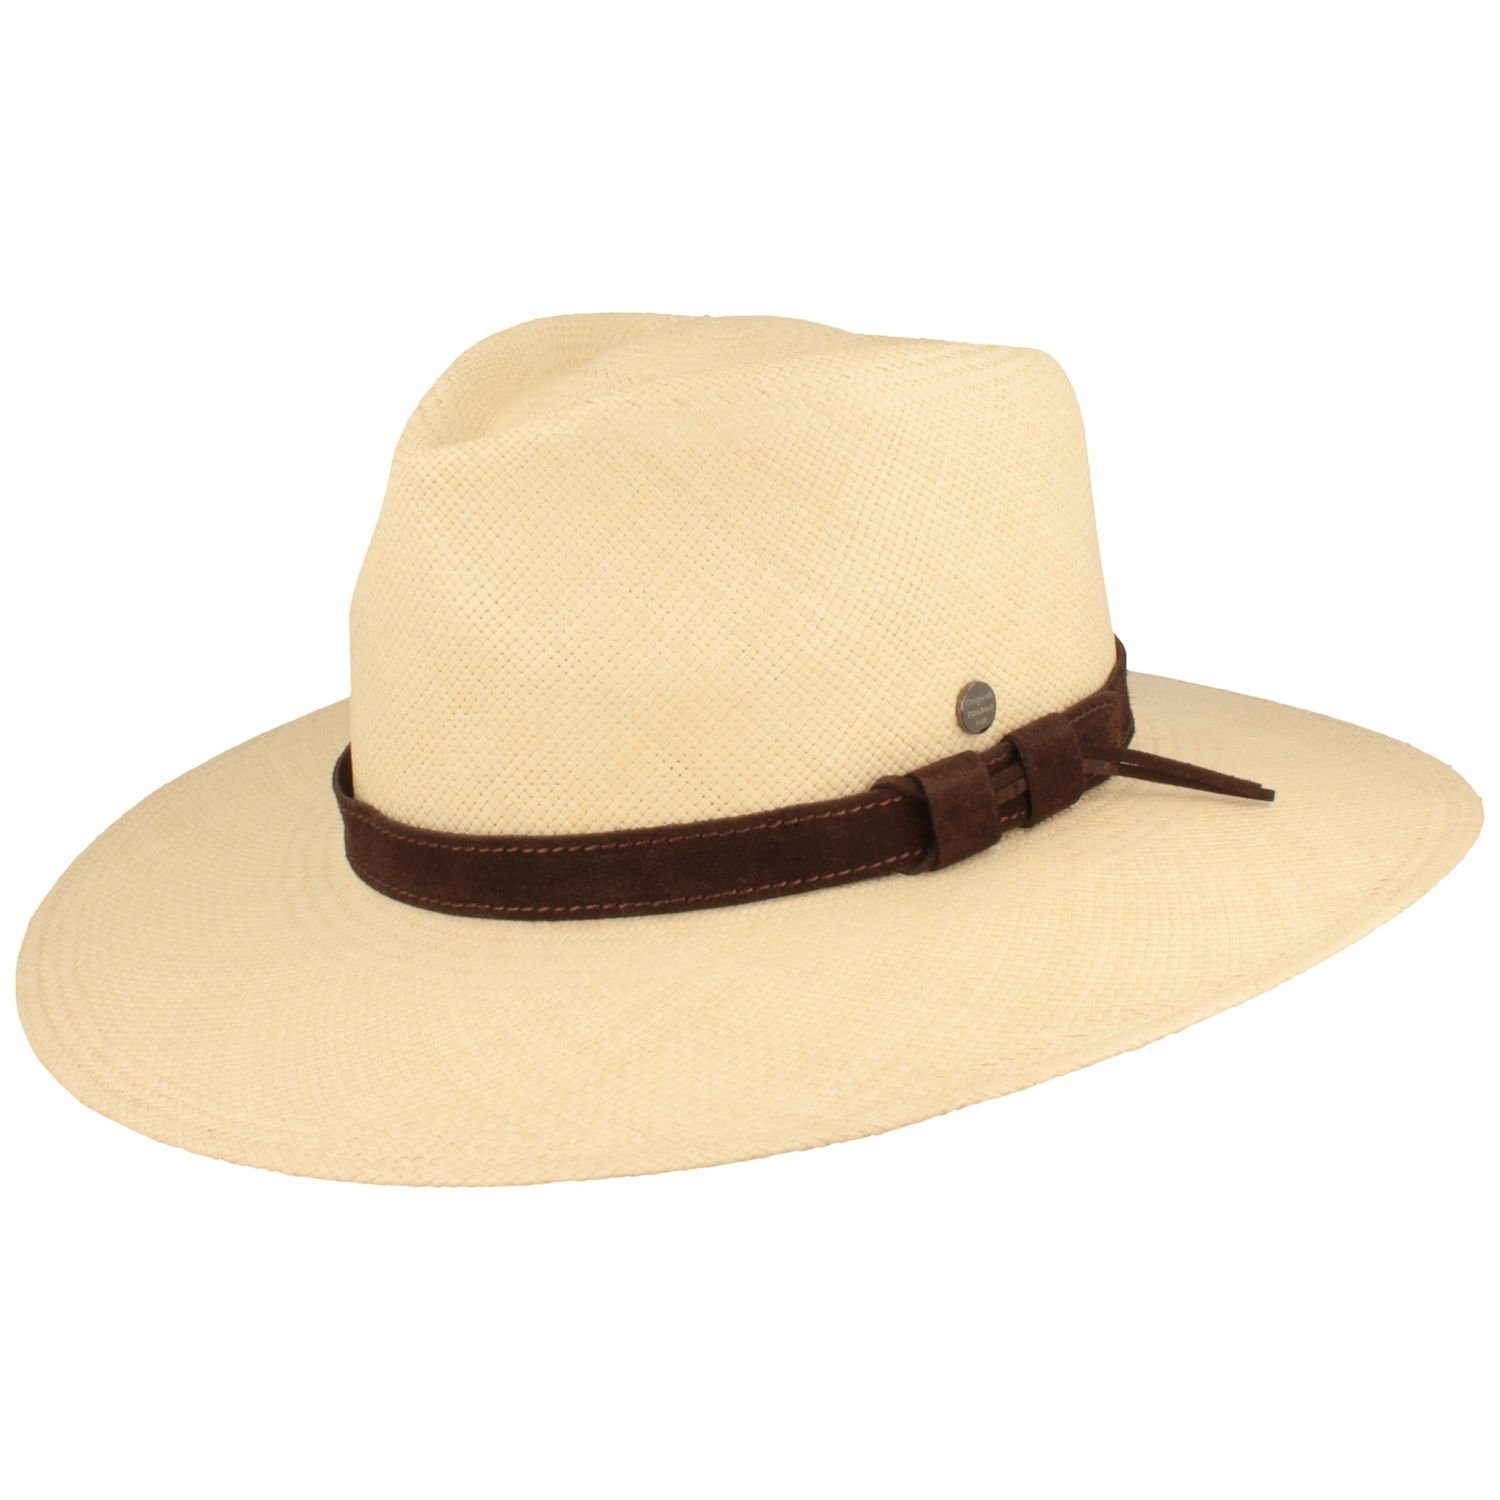 Breiter Strohhut Panama Hut und 50+ UV-Schutz mit Leder-Garnitur